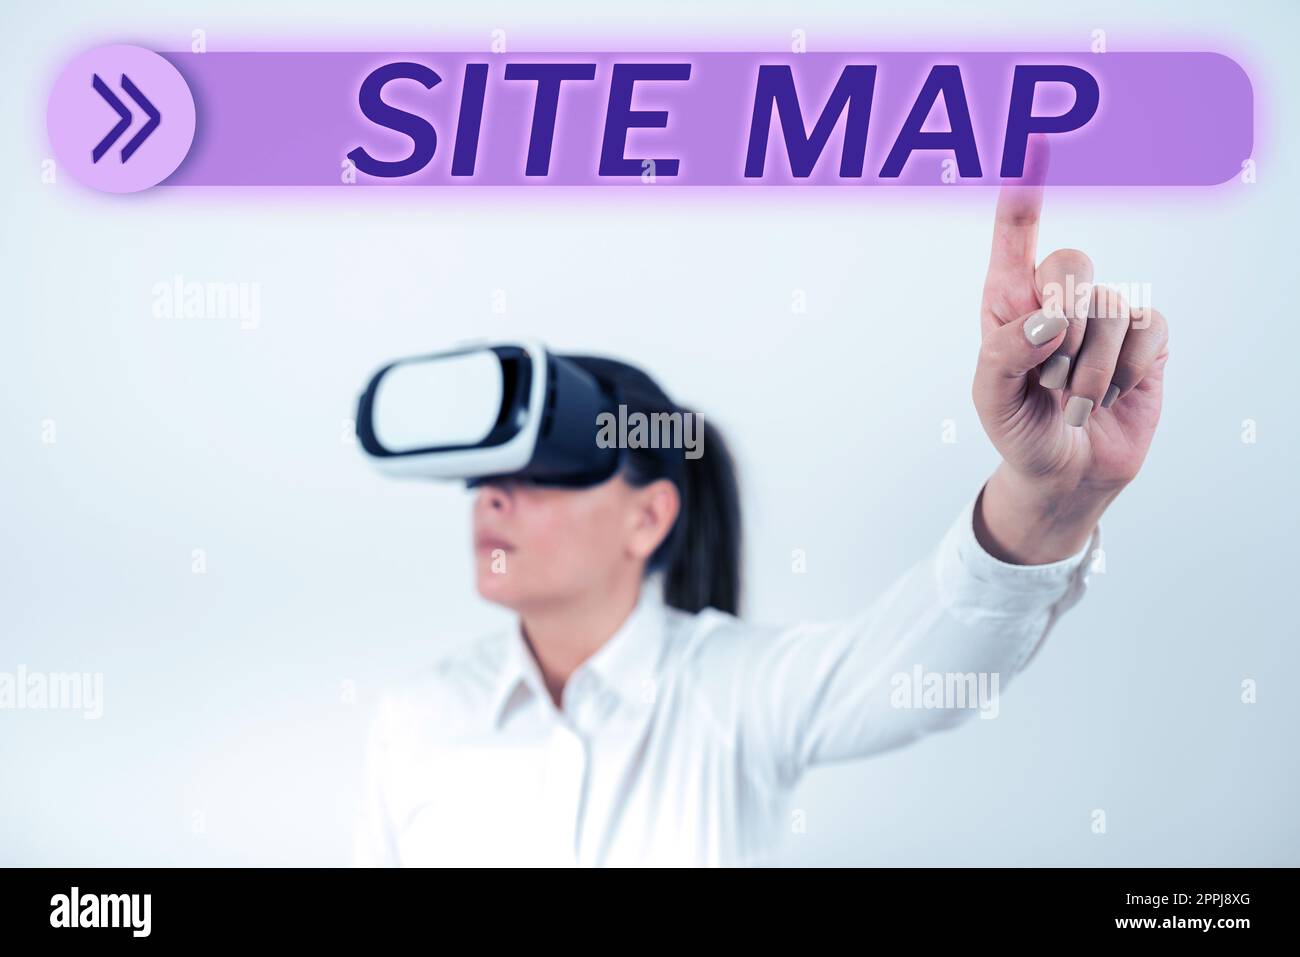 Sitemap mit handschriftlichem Text. Eine Geschäftsidee, die sowohl Benutzern als auch Suchmaschinen die Navigation auf der Website erleichtern soll Stockfoto